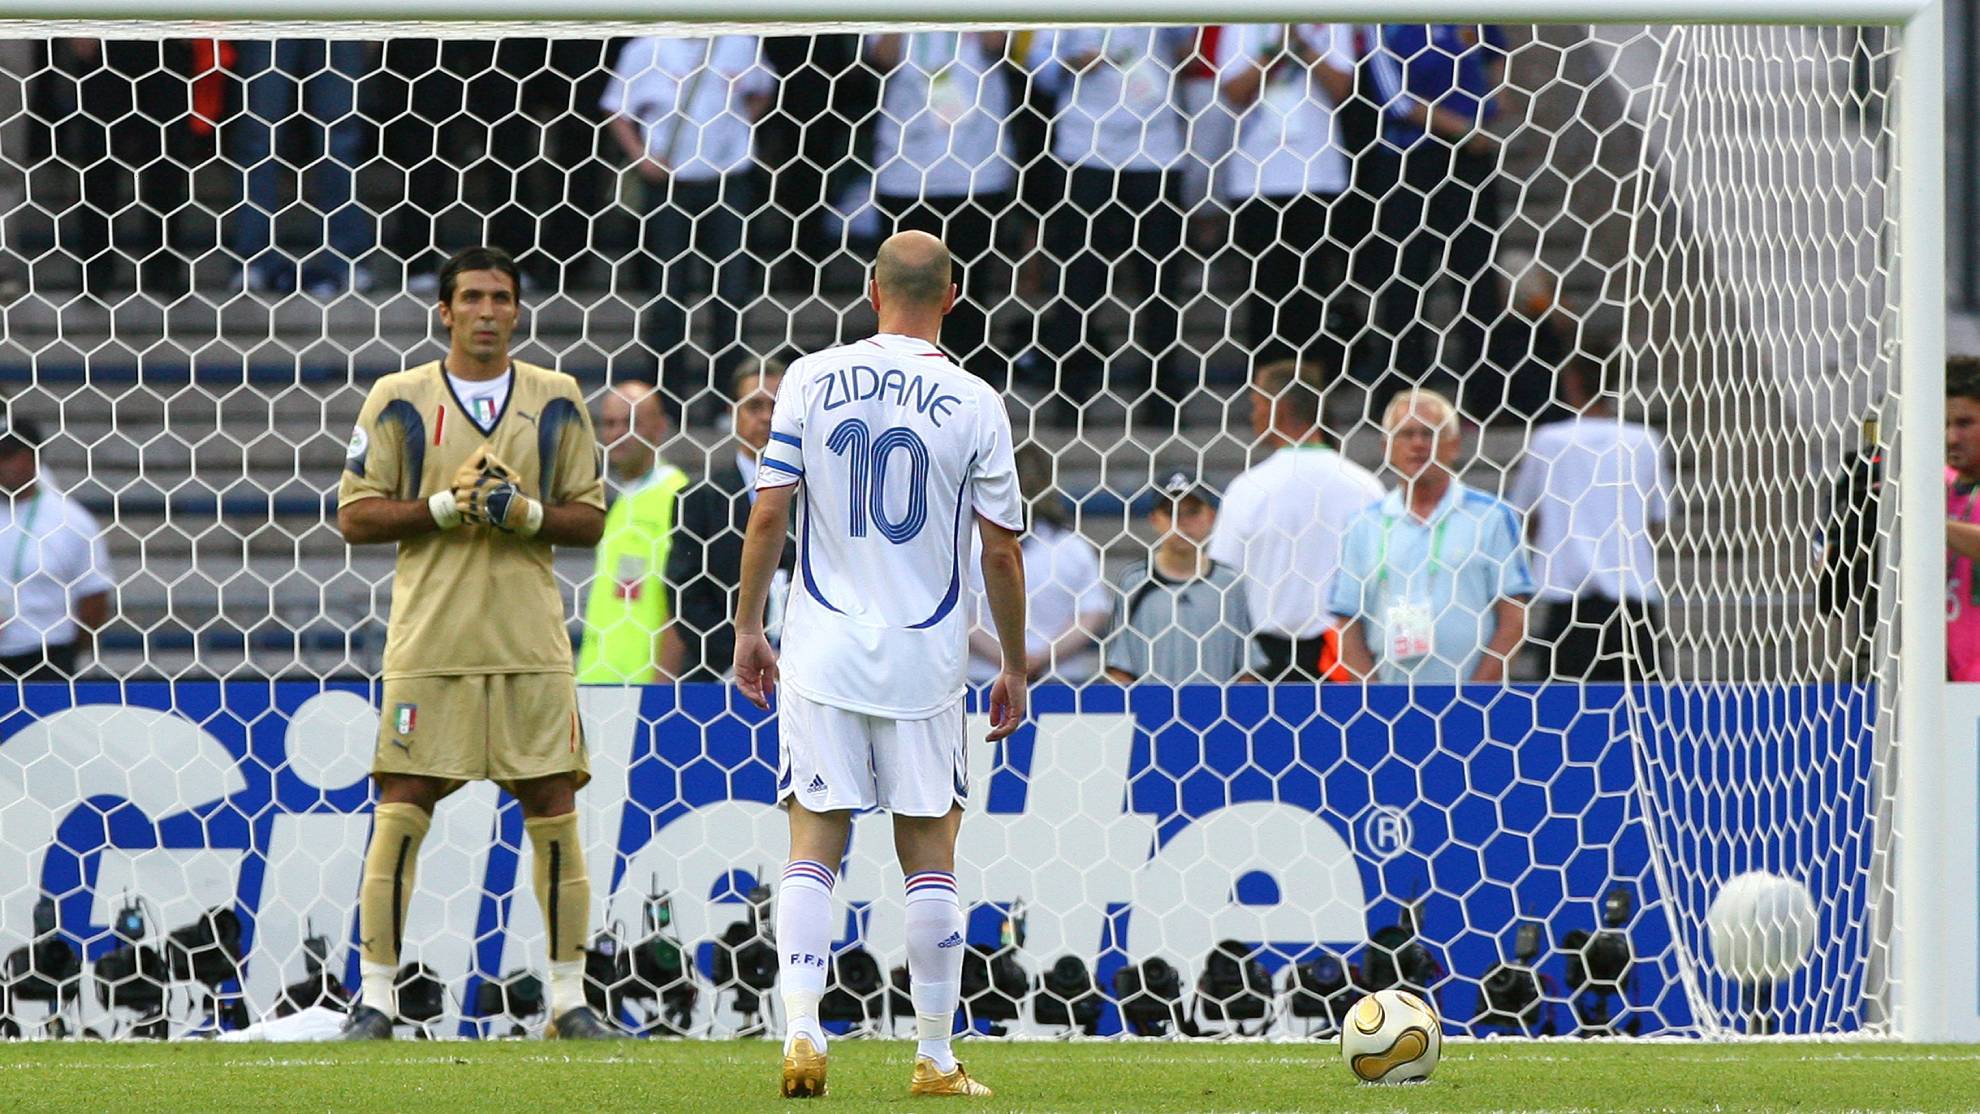 Zidane se prepara para lanzar el penalti en la final del Mundial 2006